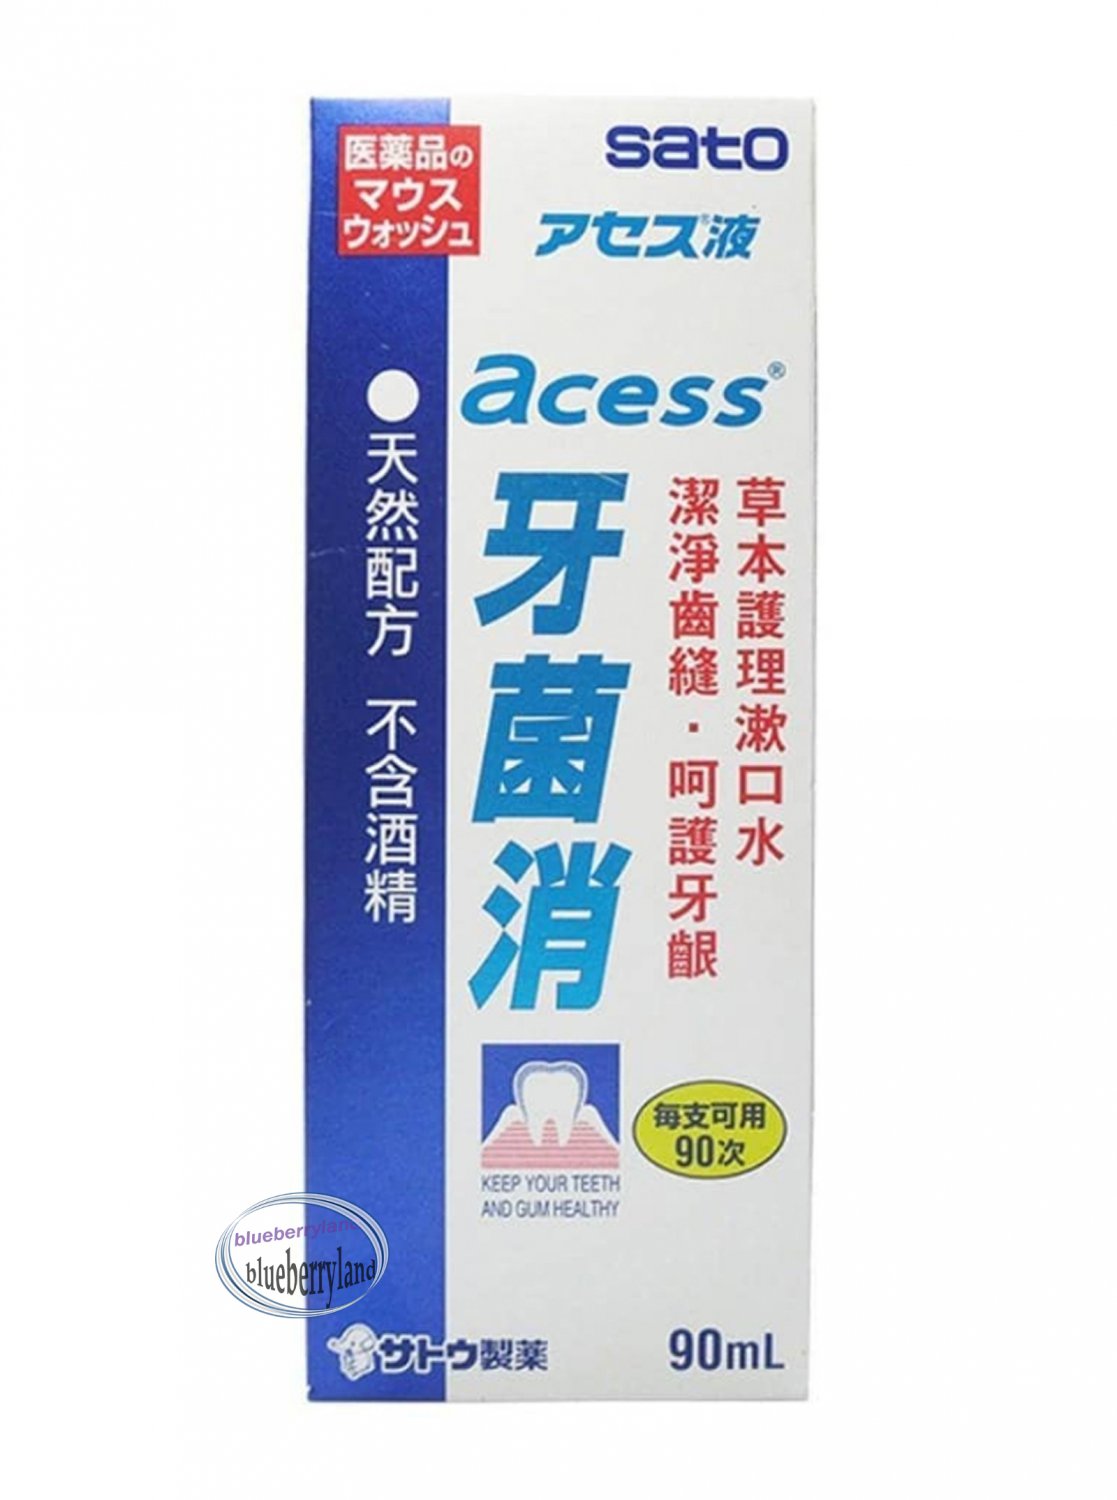 Sato Acess Solution Concentrated Mouthwash 90ml  ä½�è�¤ç��è��æ¶�